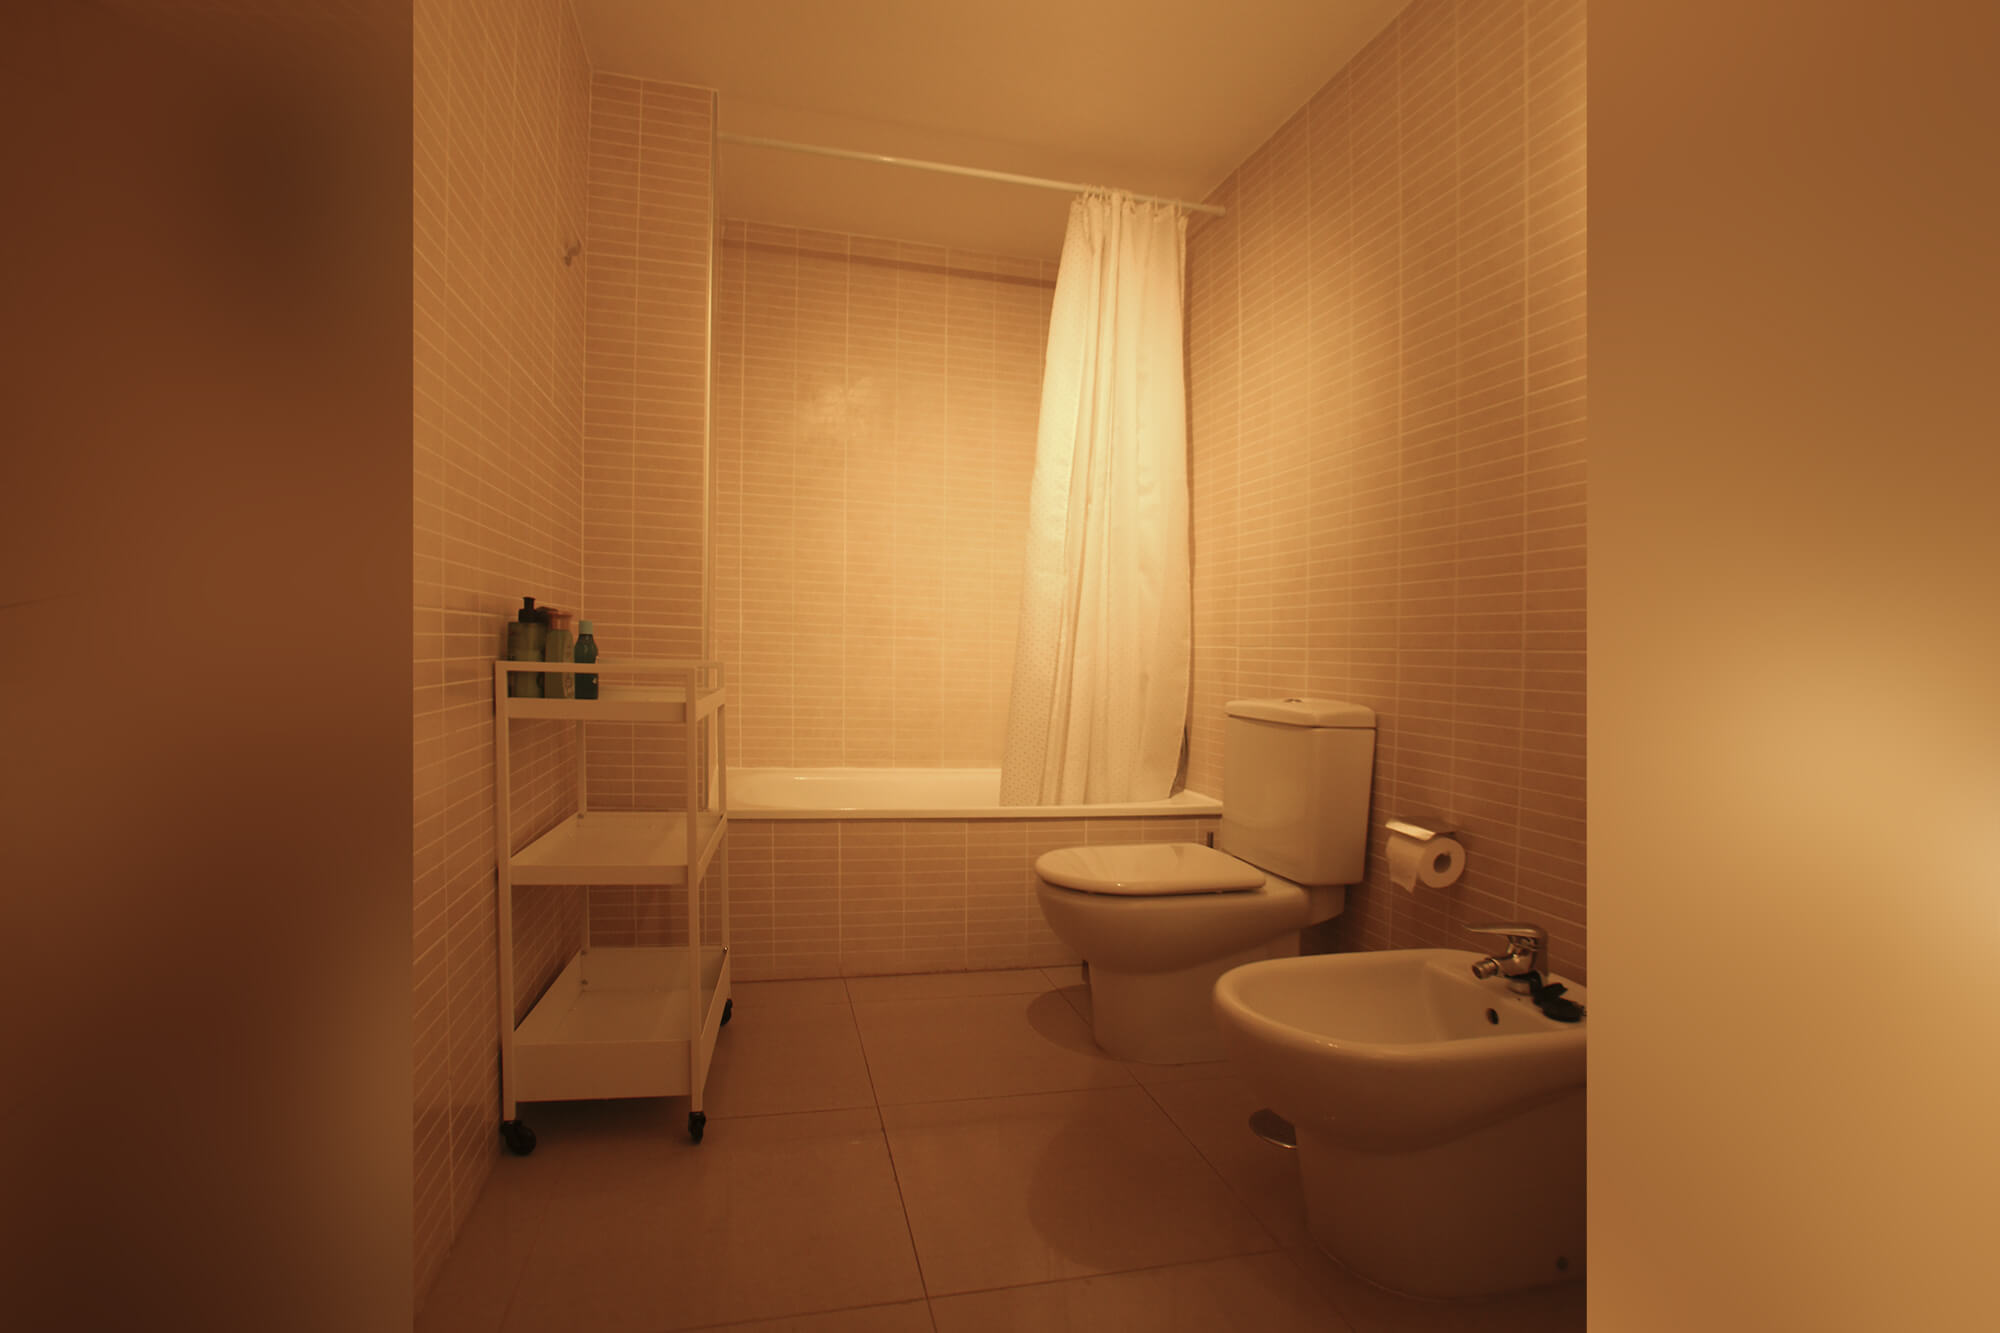 apartment for rent in Tenerife - bathroom